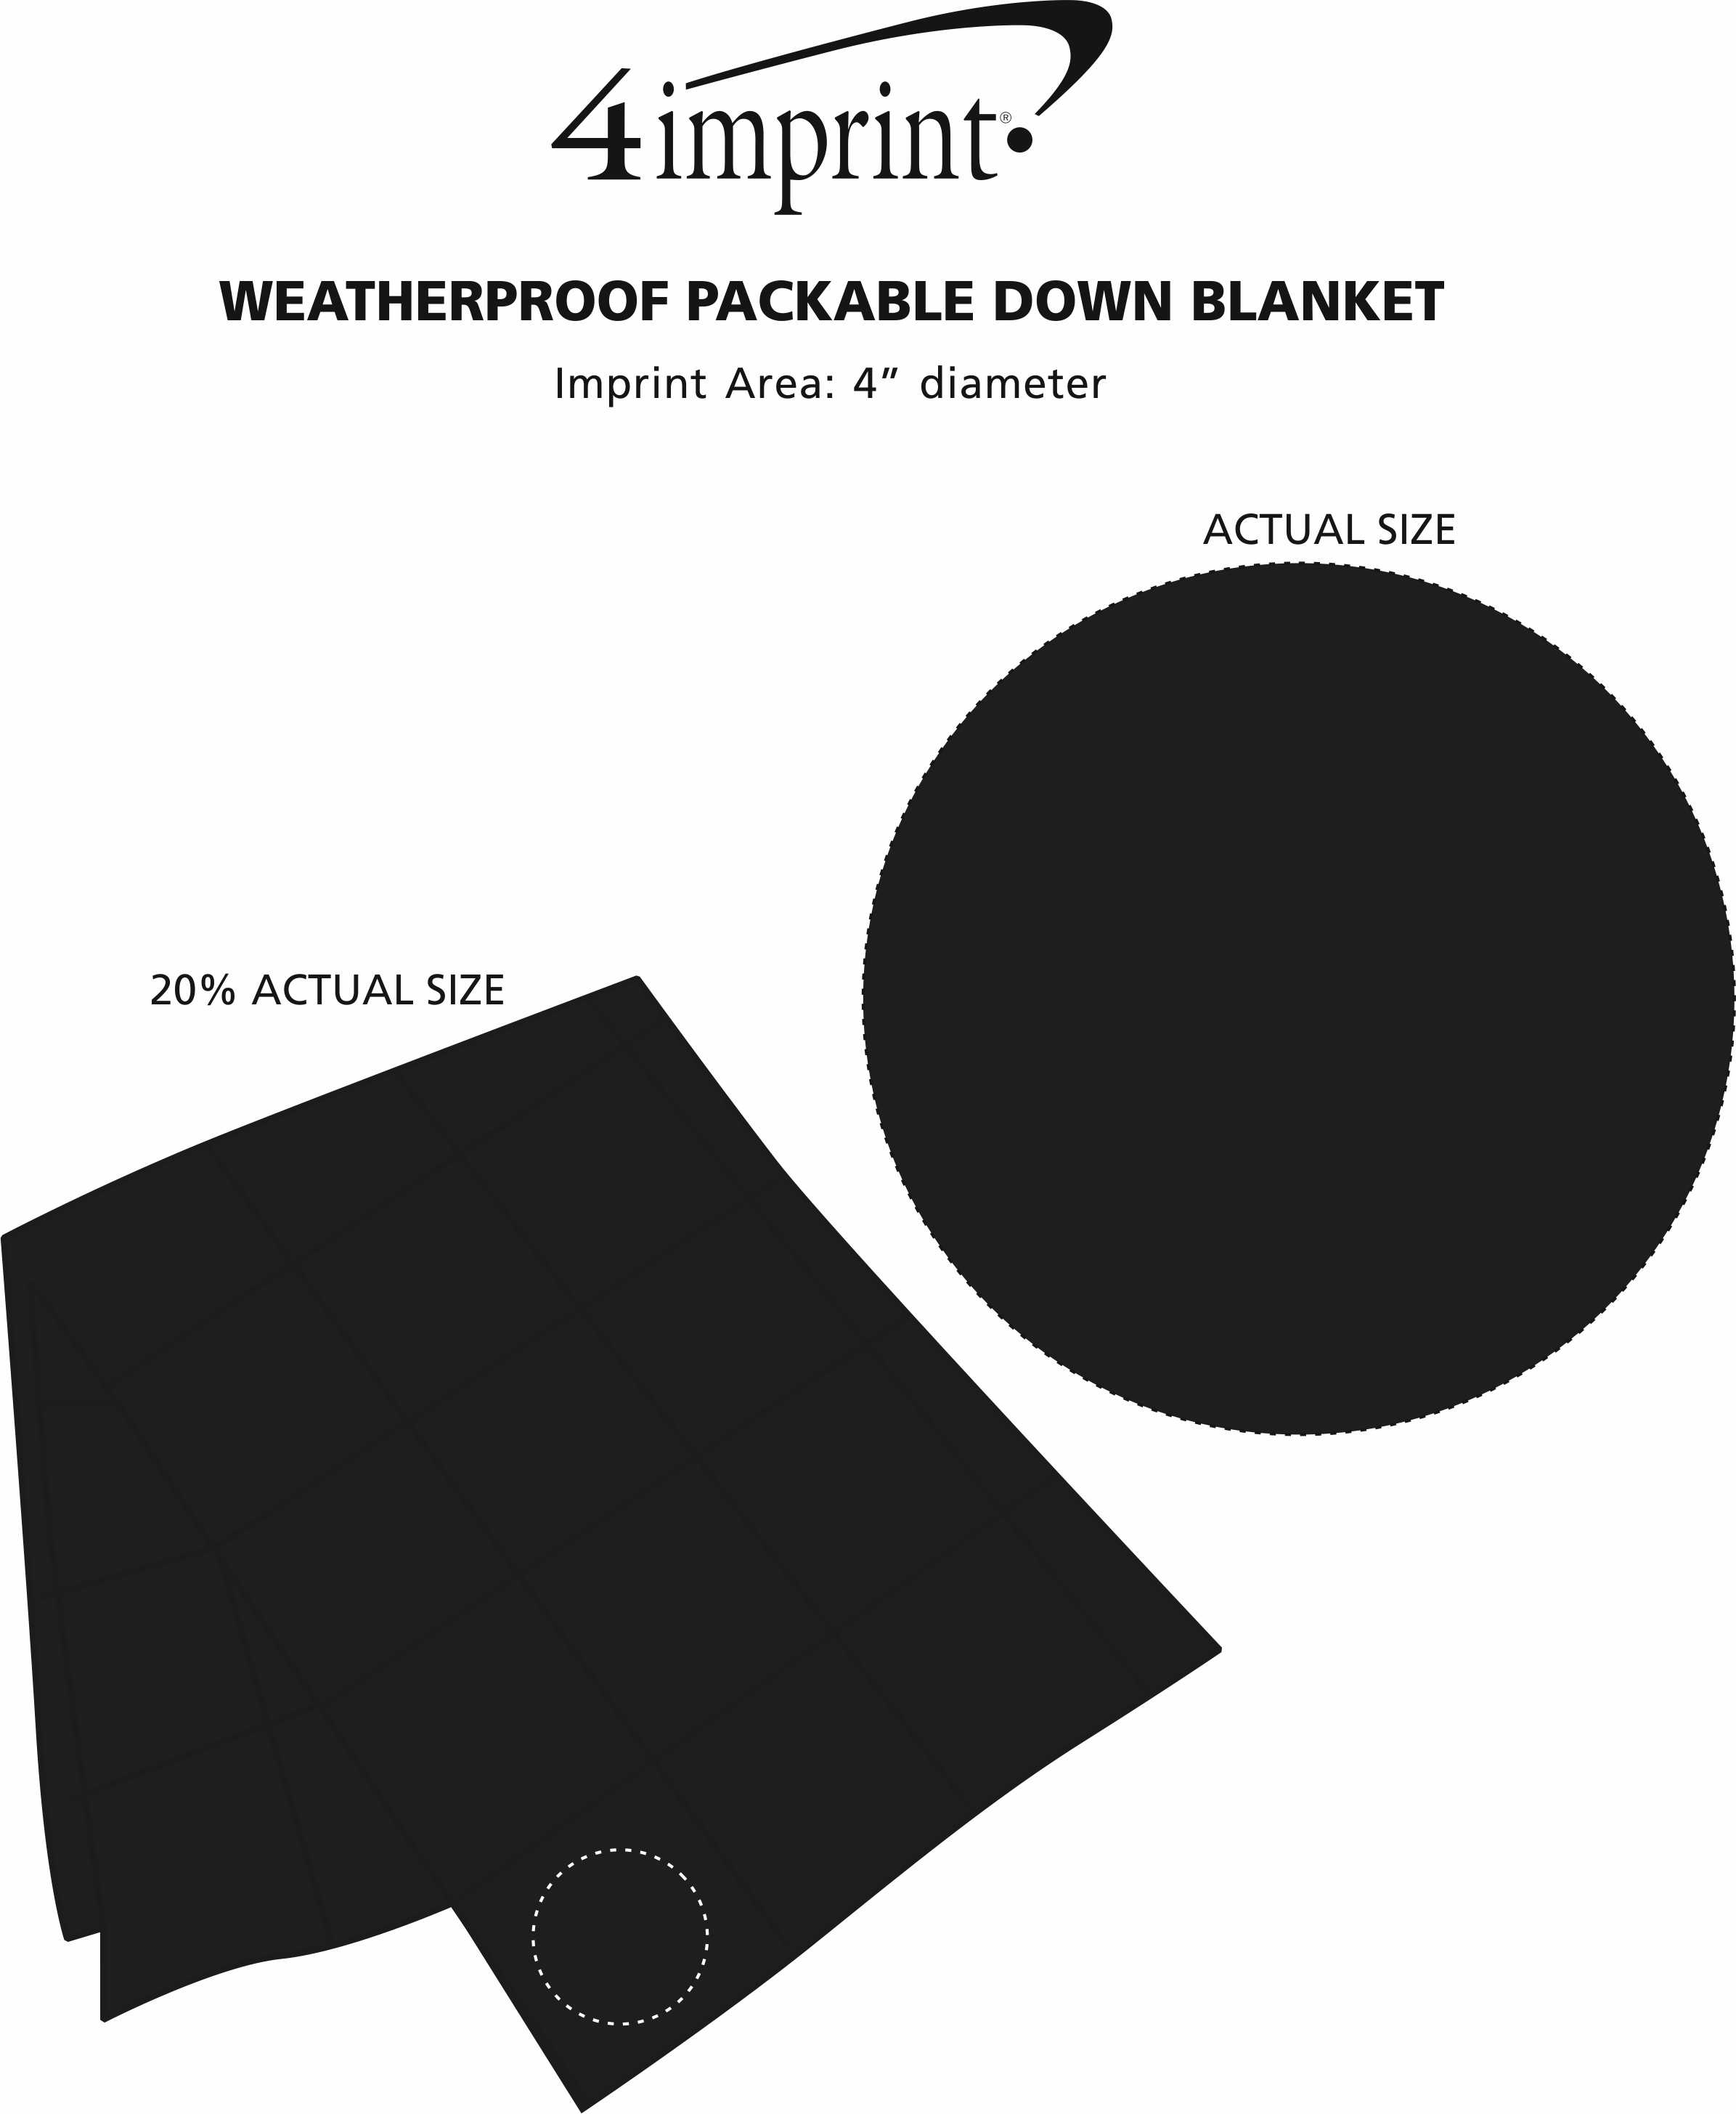 Imprint Area of Weatherproof Packable Down Blanket